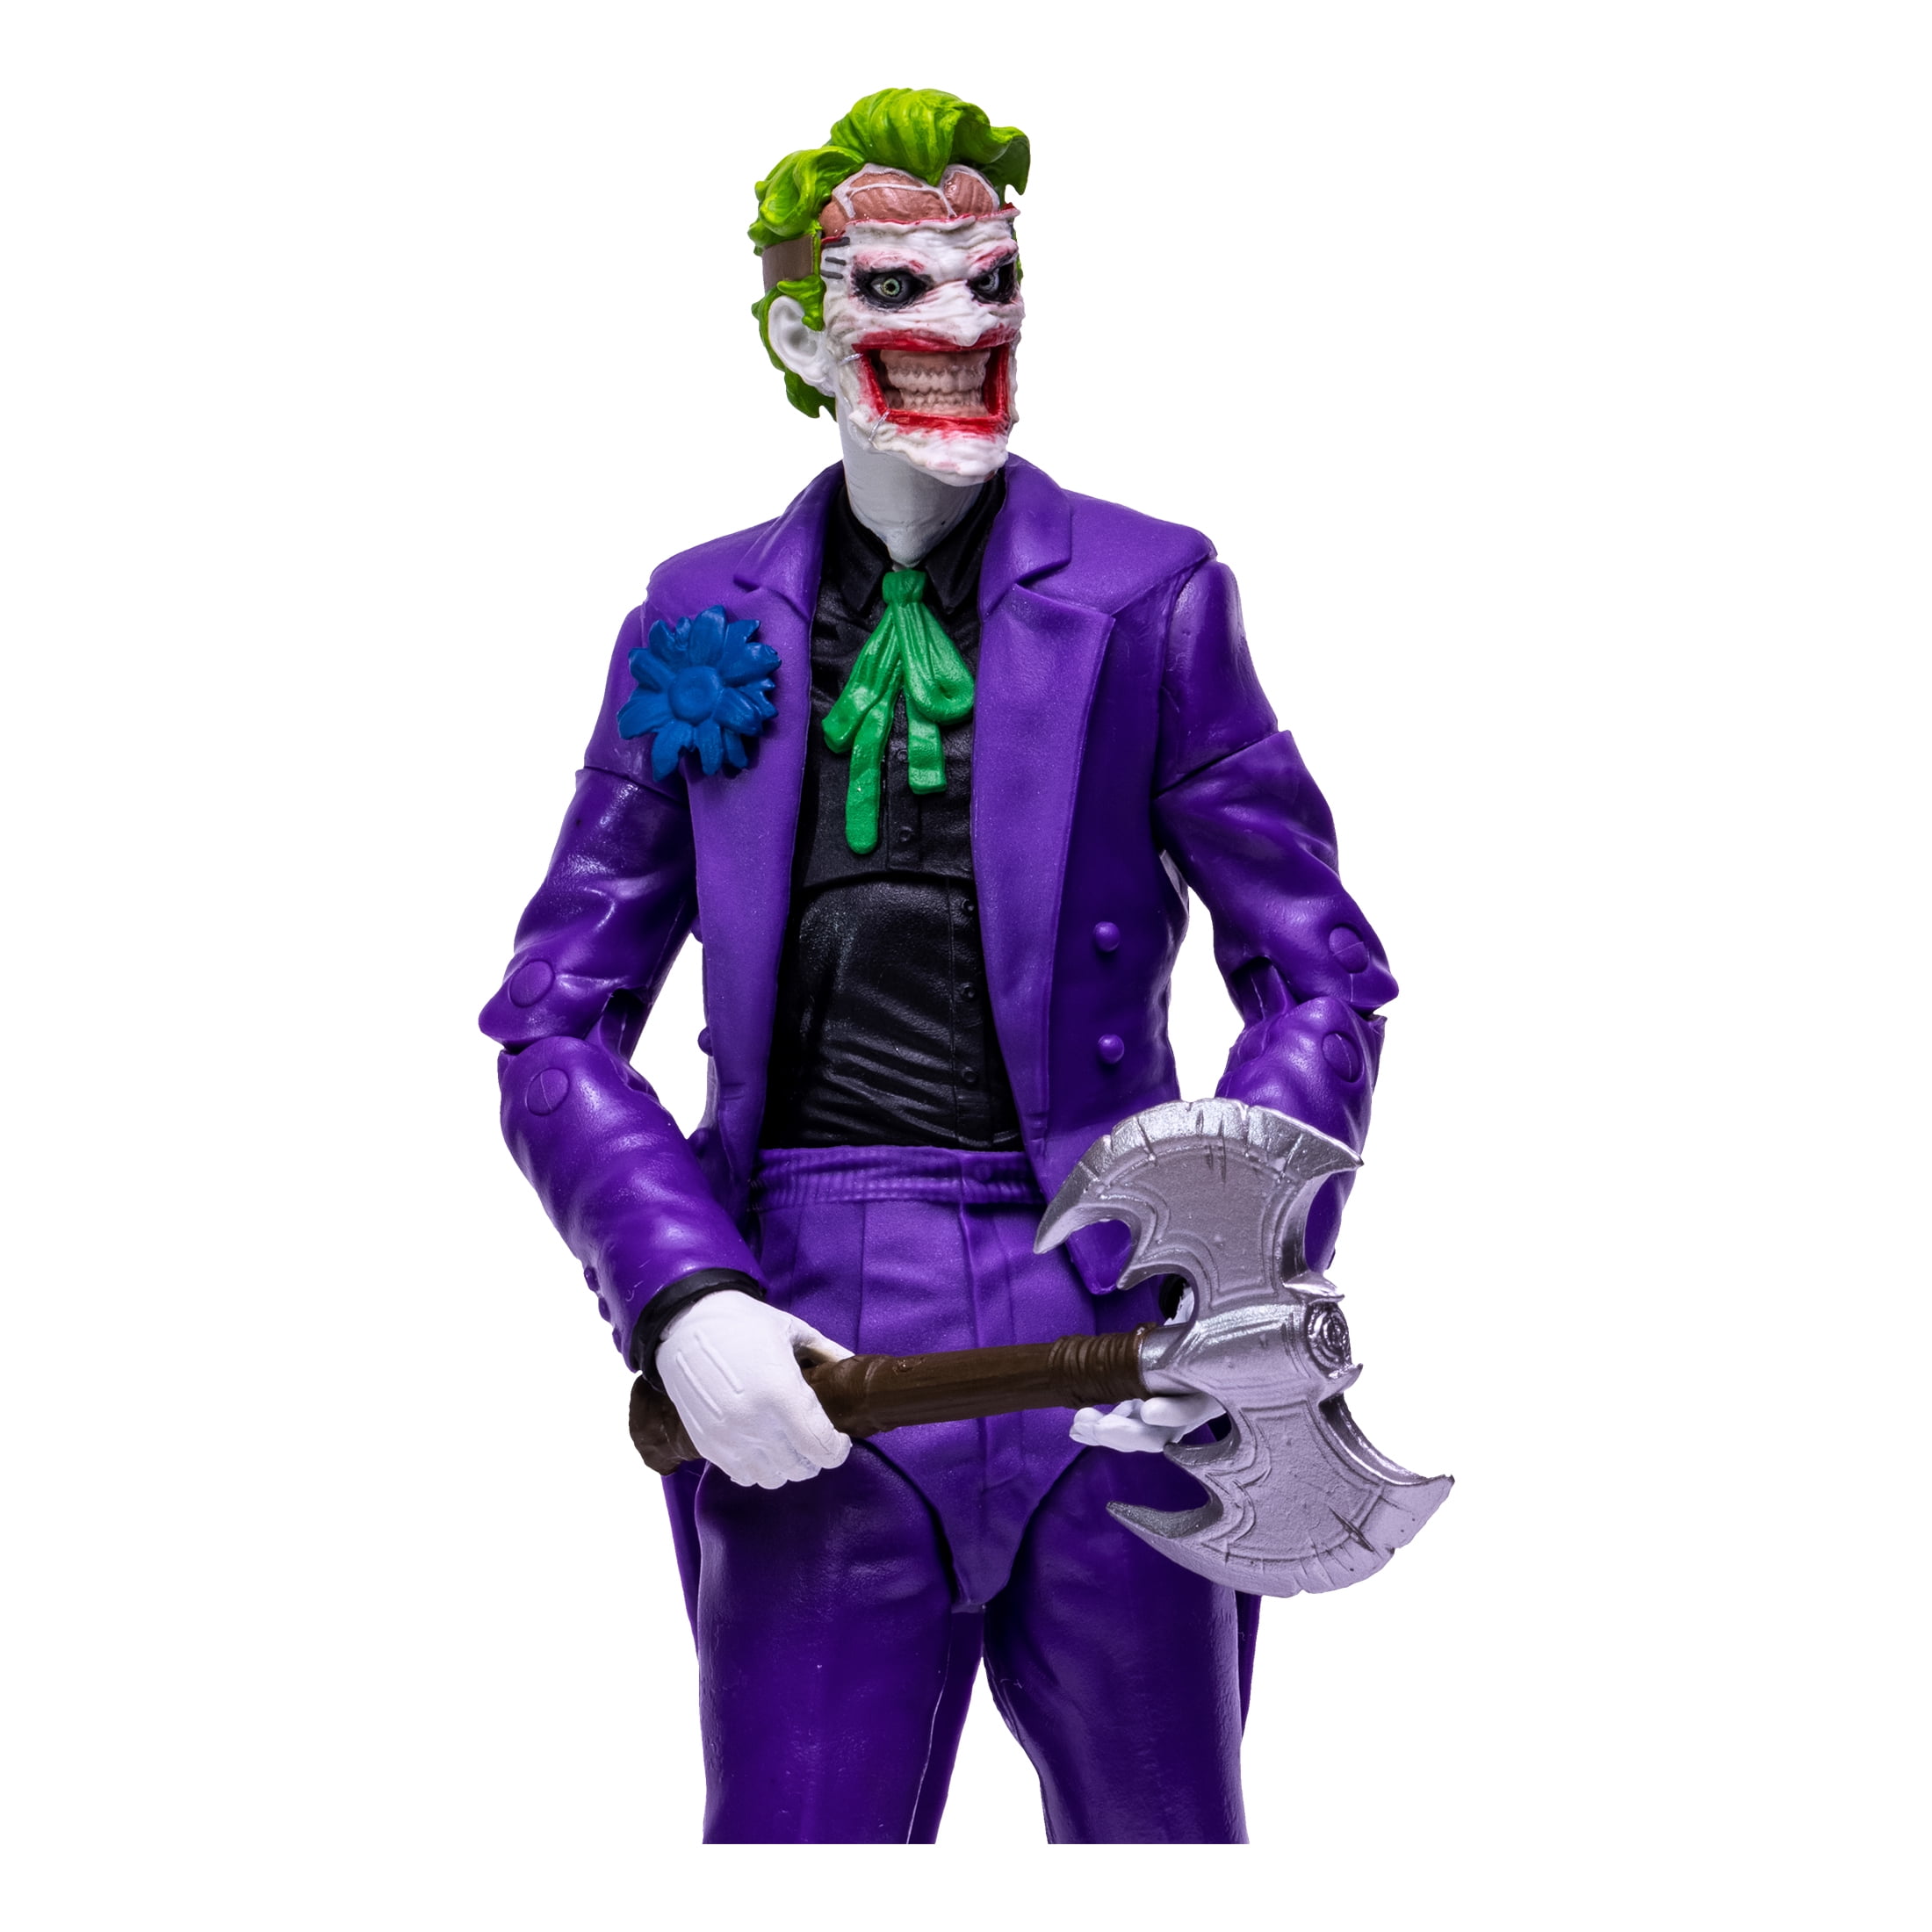 DC Multiverse Suicide Squad The Joker Action Figure 